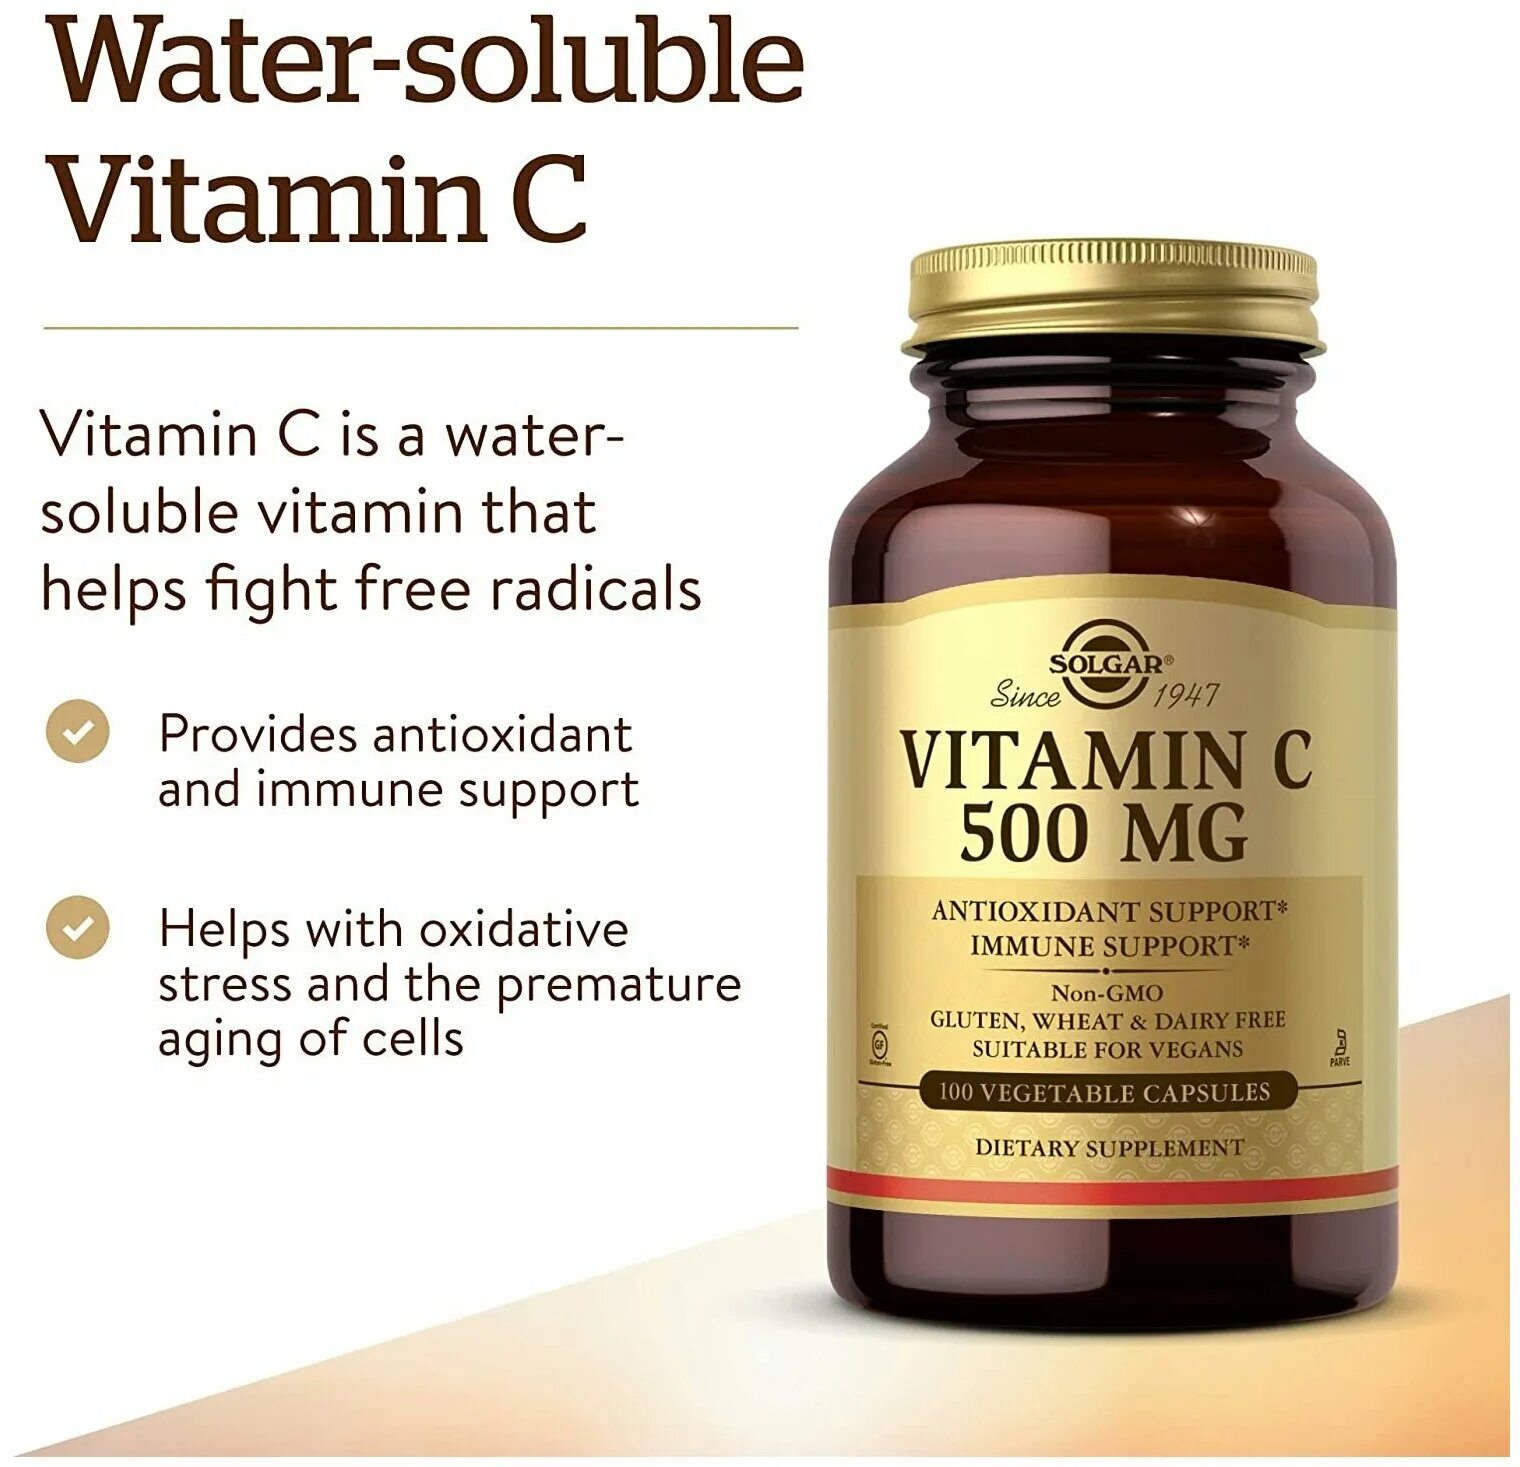 Solgar Vitamin c 1000mg 90 Tablets. Ester-c 1000 Vitamin c 90 Tablets Solgar. Солгар витамин с 500мг. Солгар витамин с 1000 мг.